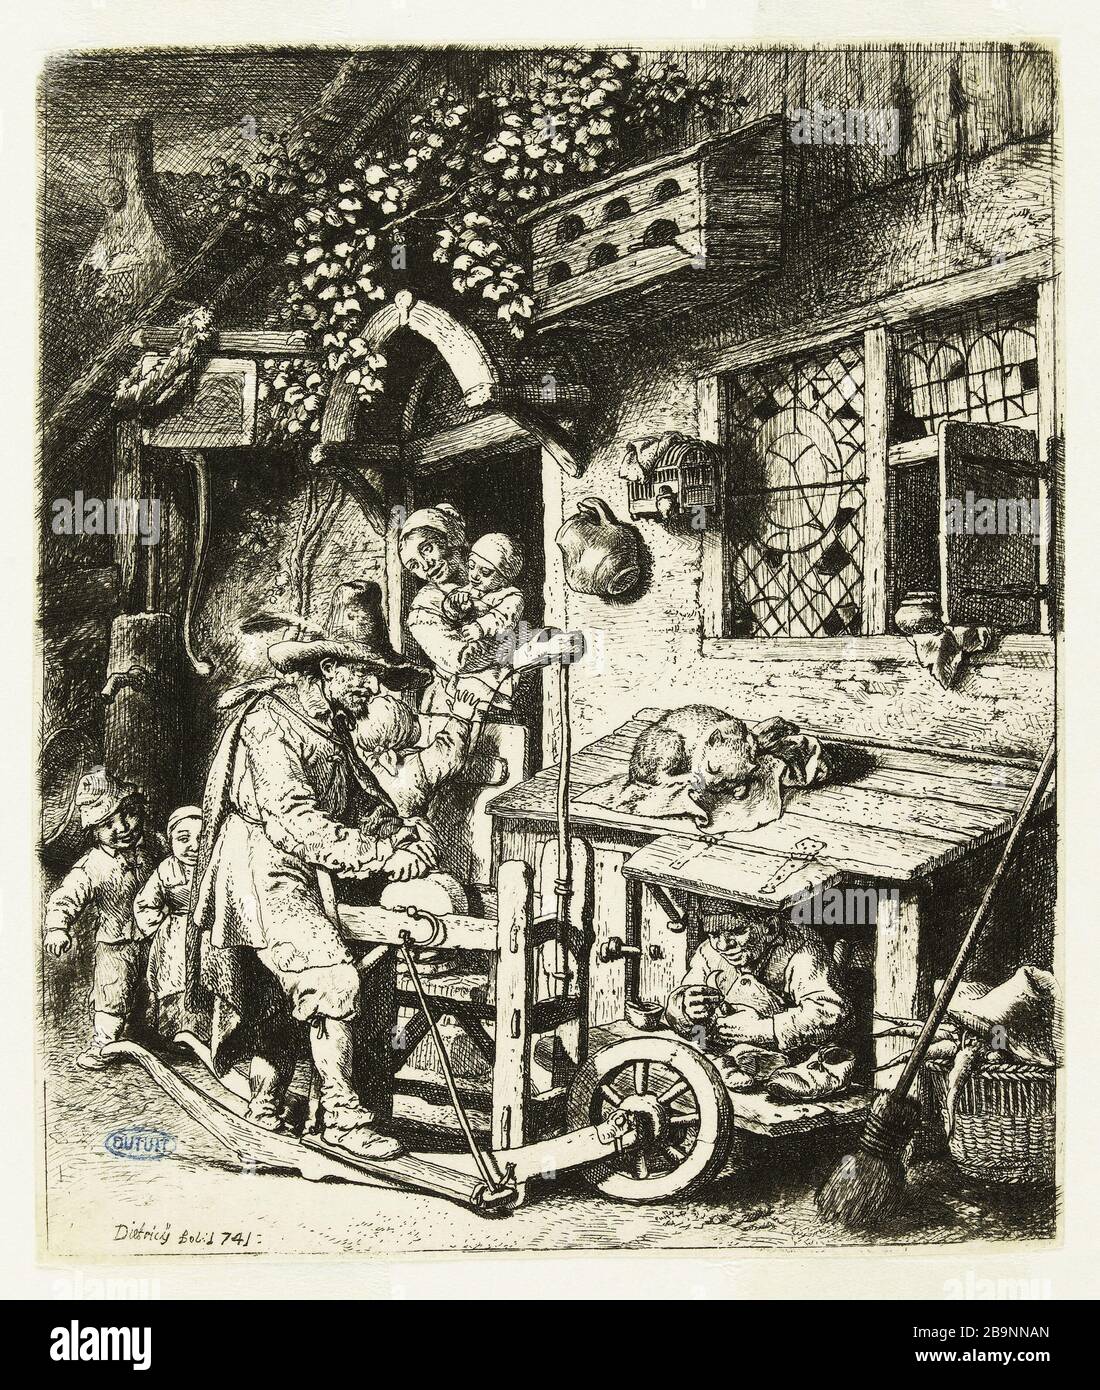 The Grinder by Adriaen van Ostade Christian Wilhem Ernst Dietrich ou Dietricy. Le Rémouleur d'après Adriaen van Ostade. Eau-forte, 1741 Stock Photo